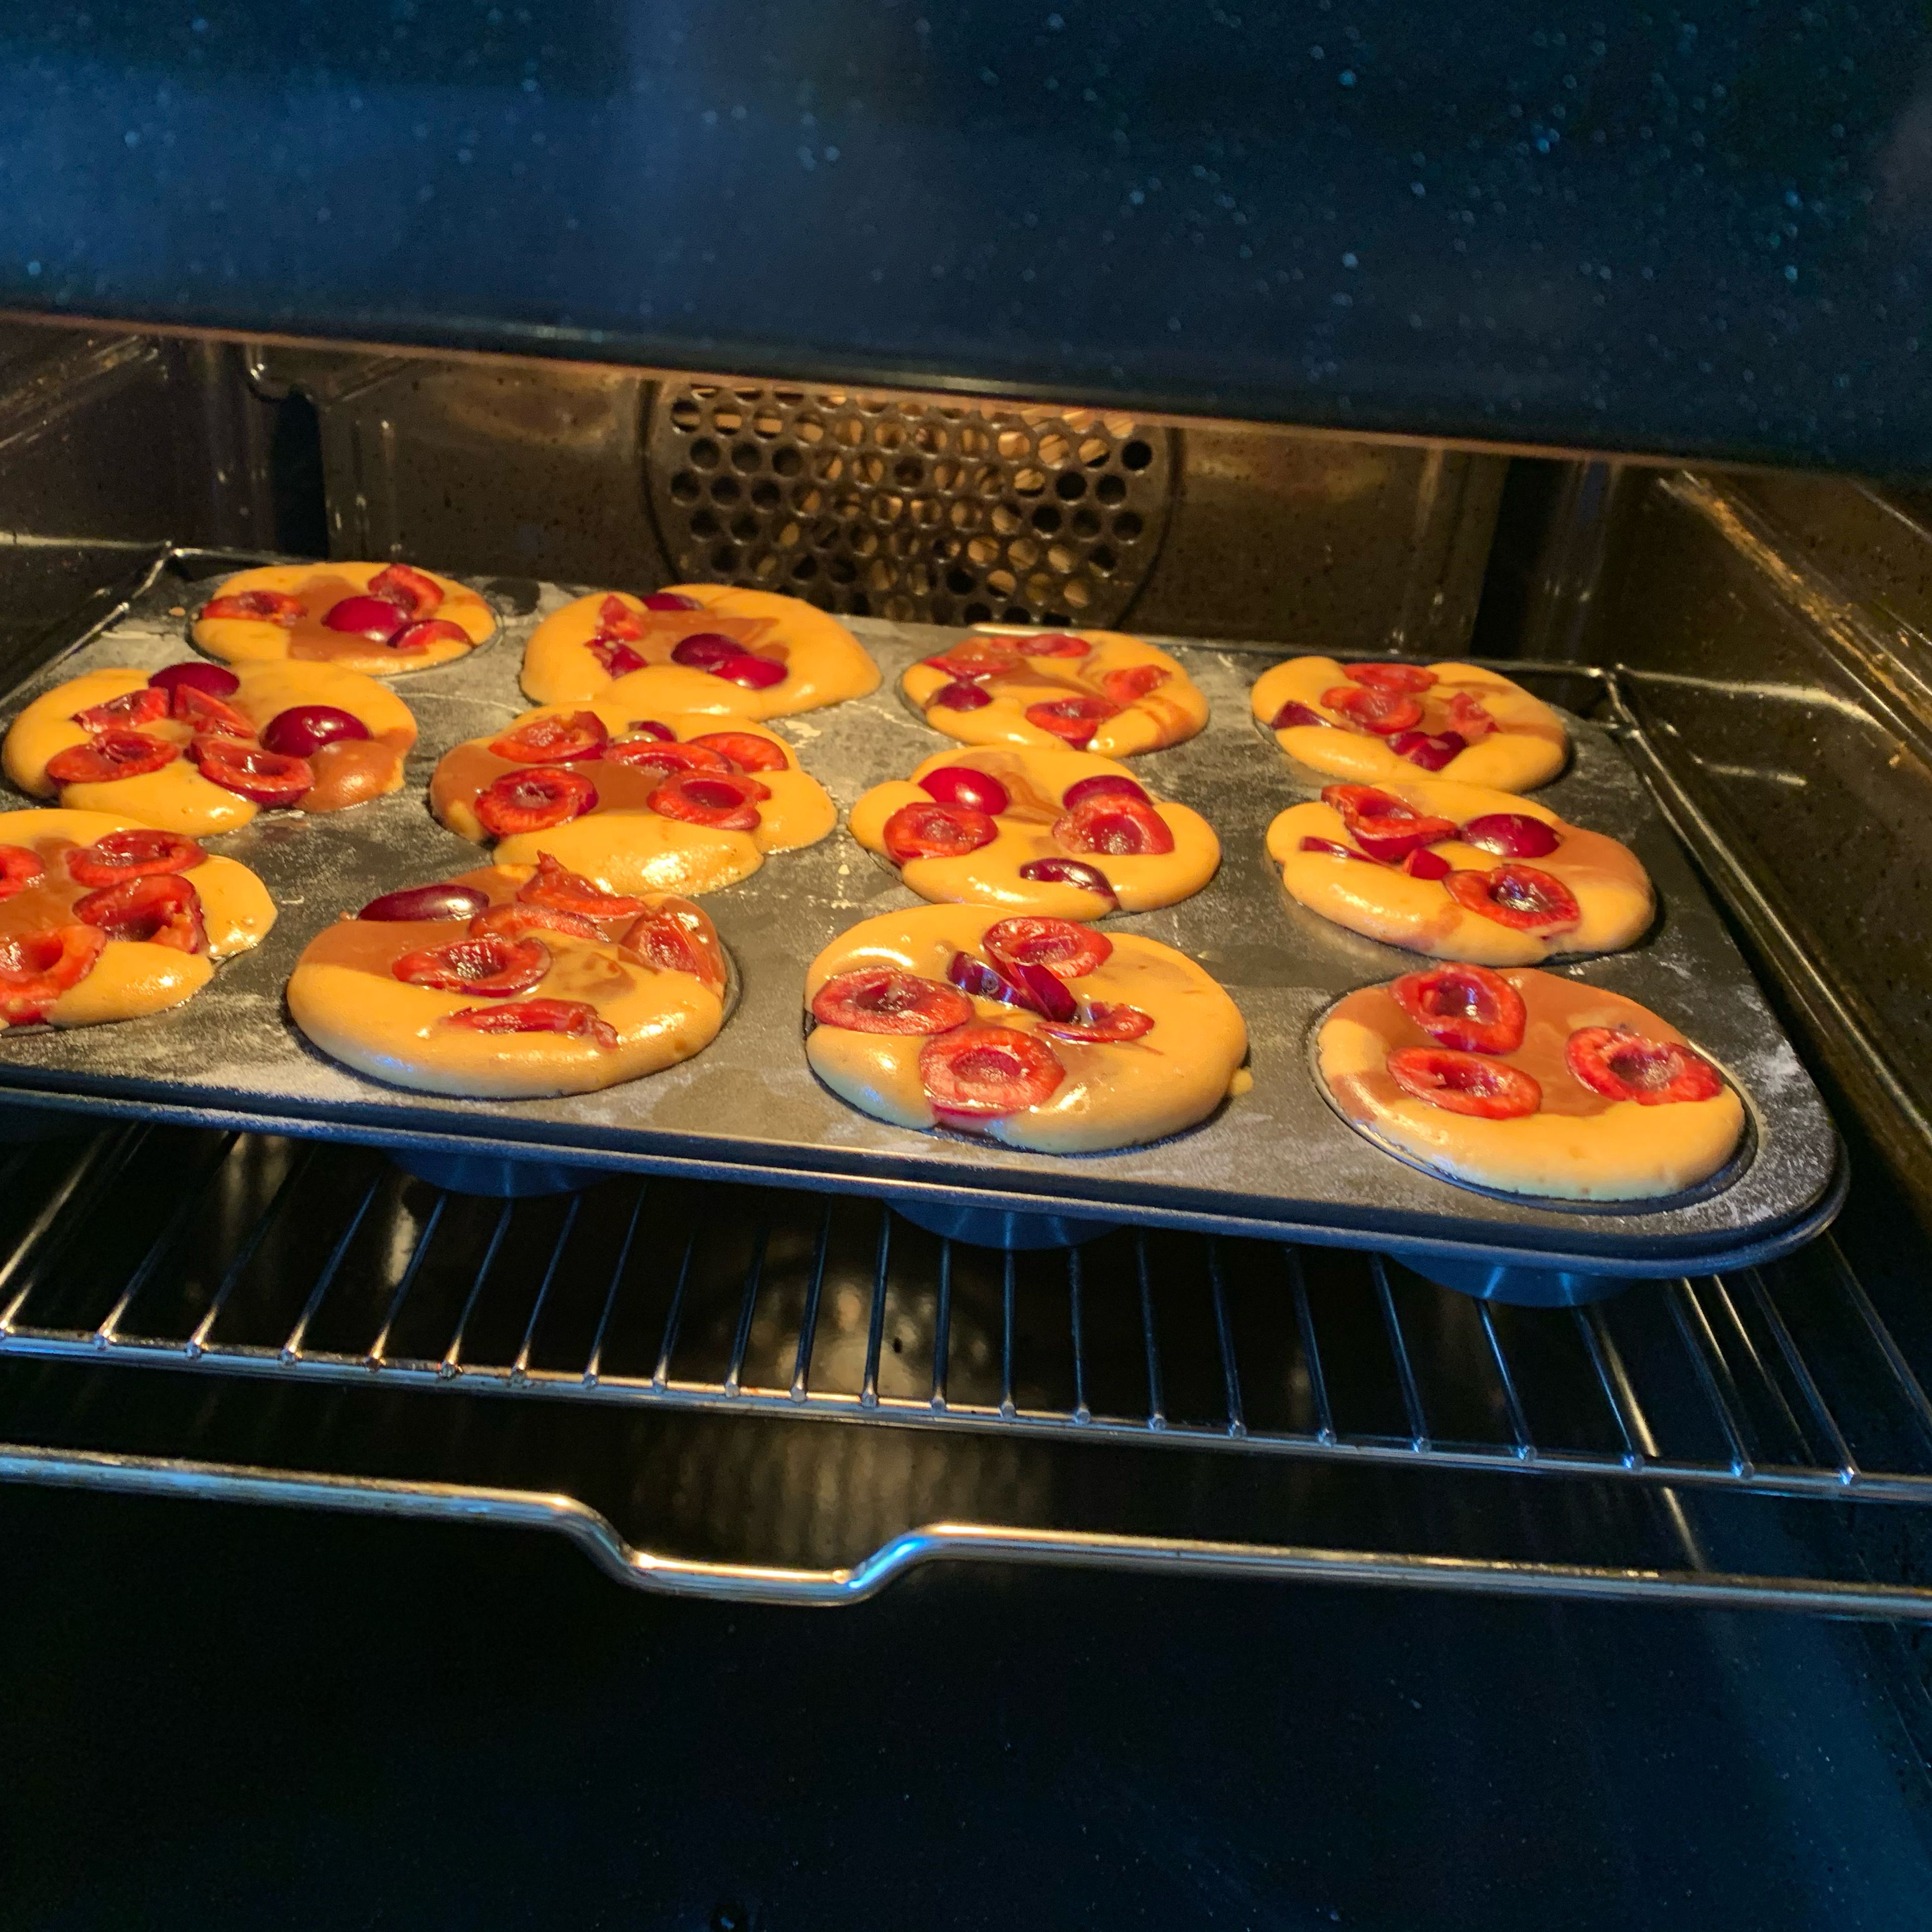 Ab in den Ofen: In den vorgeheizten Ofen bei 180 Grad Ober- und Unterhitze ca. 25 - 30 Minuten backen. (Nach 25 Minuten einfach mal mit dem Zahnstocher testen 😊)